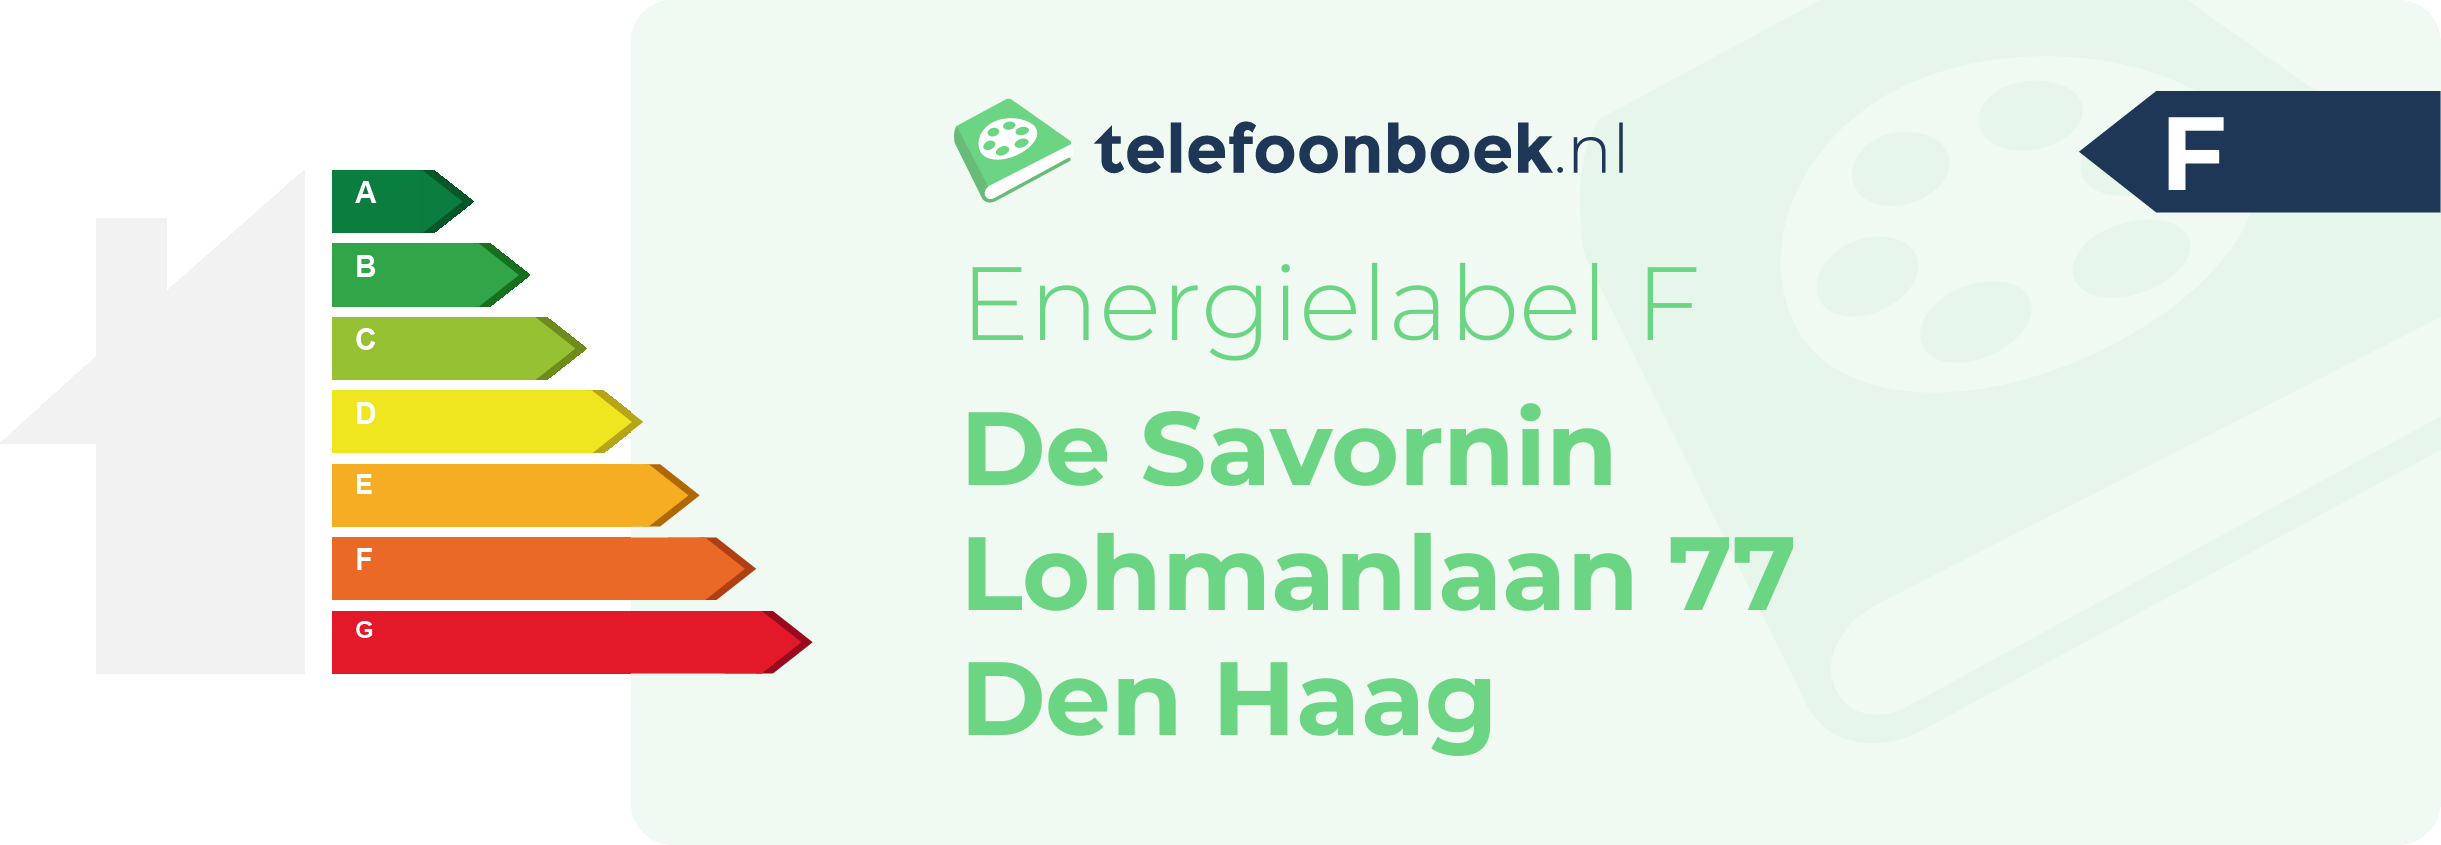 Energielabel De Savornin Lohmanlaan 77 Den Haag